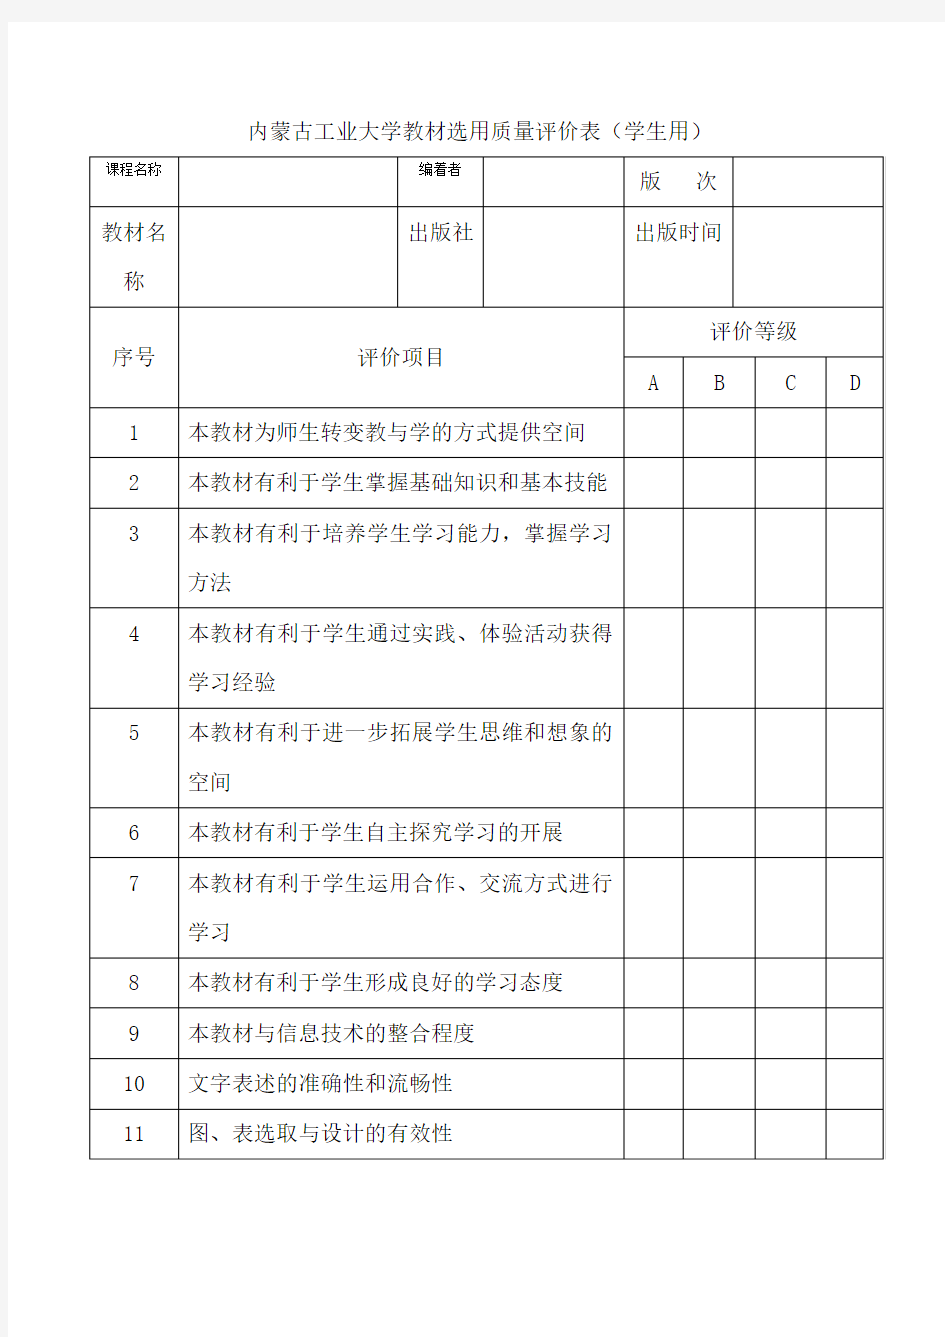 内蒙古工业大学教材选用质量评价表(学生用)